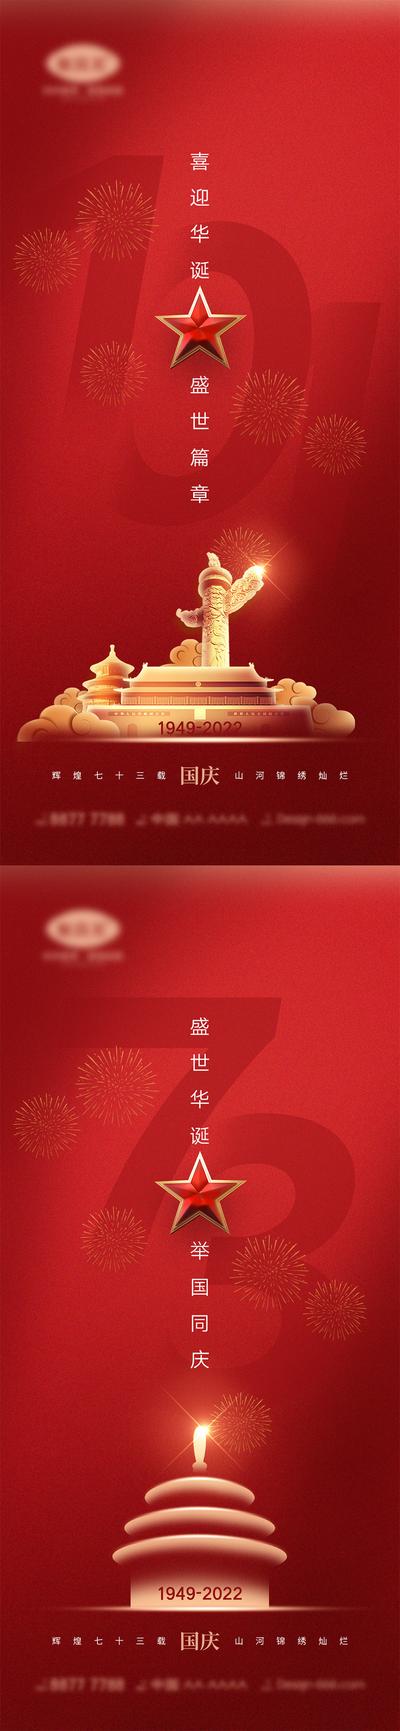 【南门网】广告 海报 公立节日 国庆节 十一 盛世华诞 举国同庆 天安门 中国红 73周年 系列